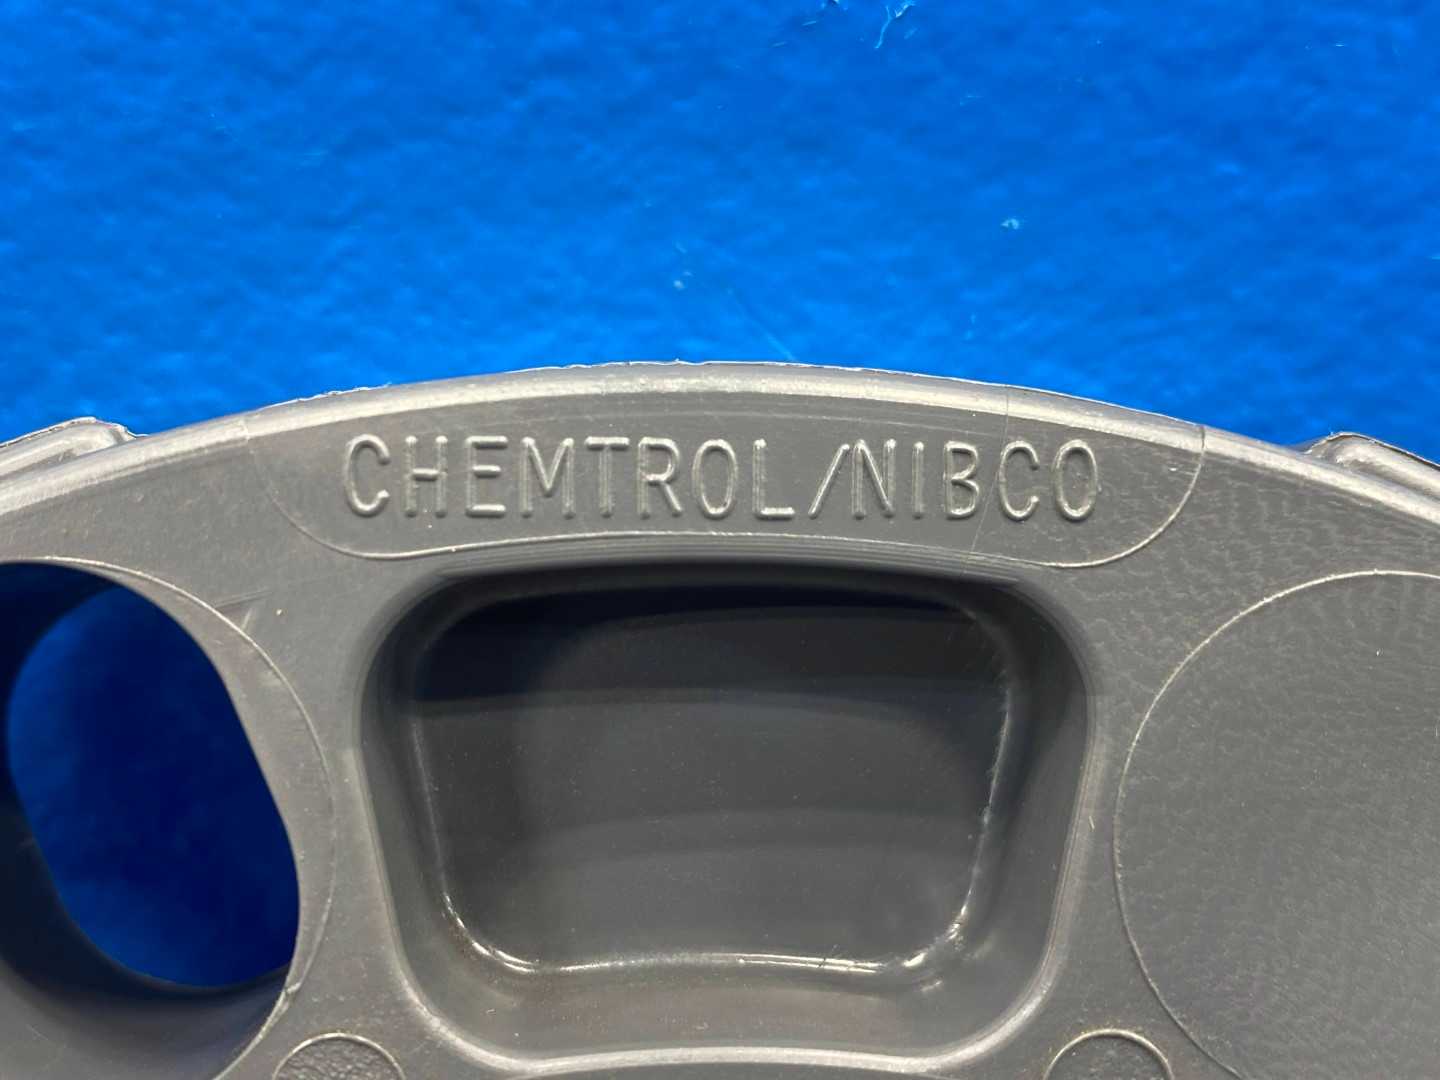 6" Chemtrol/NIBCO F1970 150 PSI Bolt Torque Flange